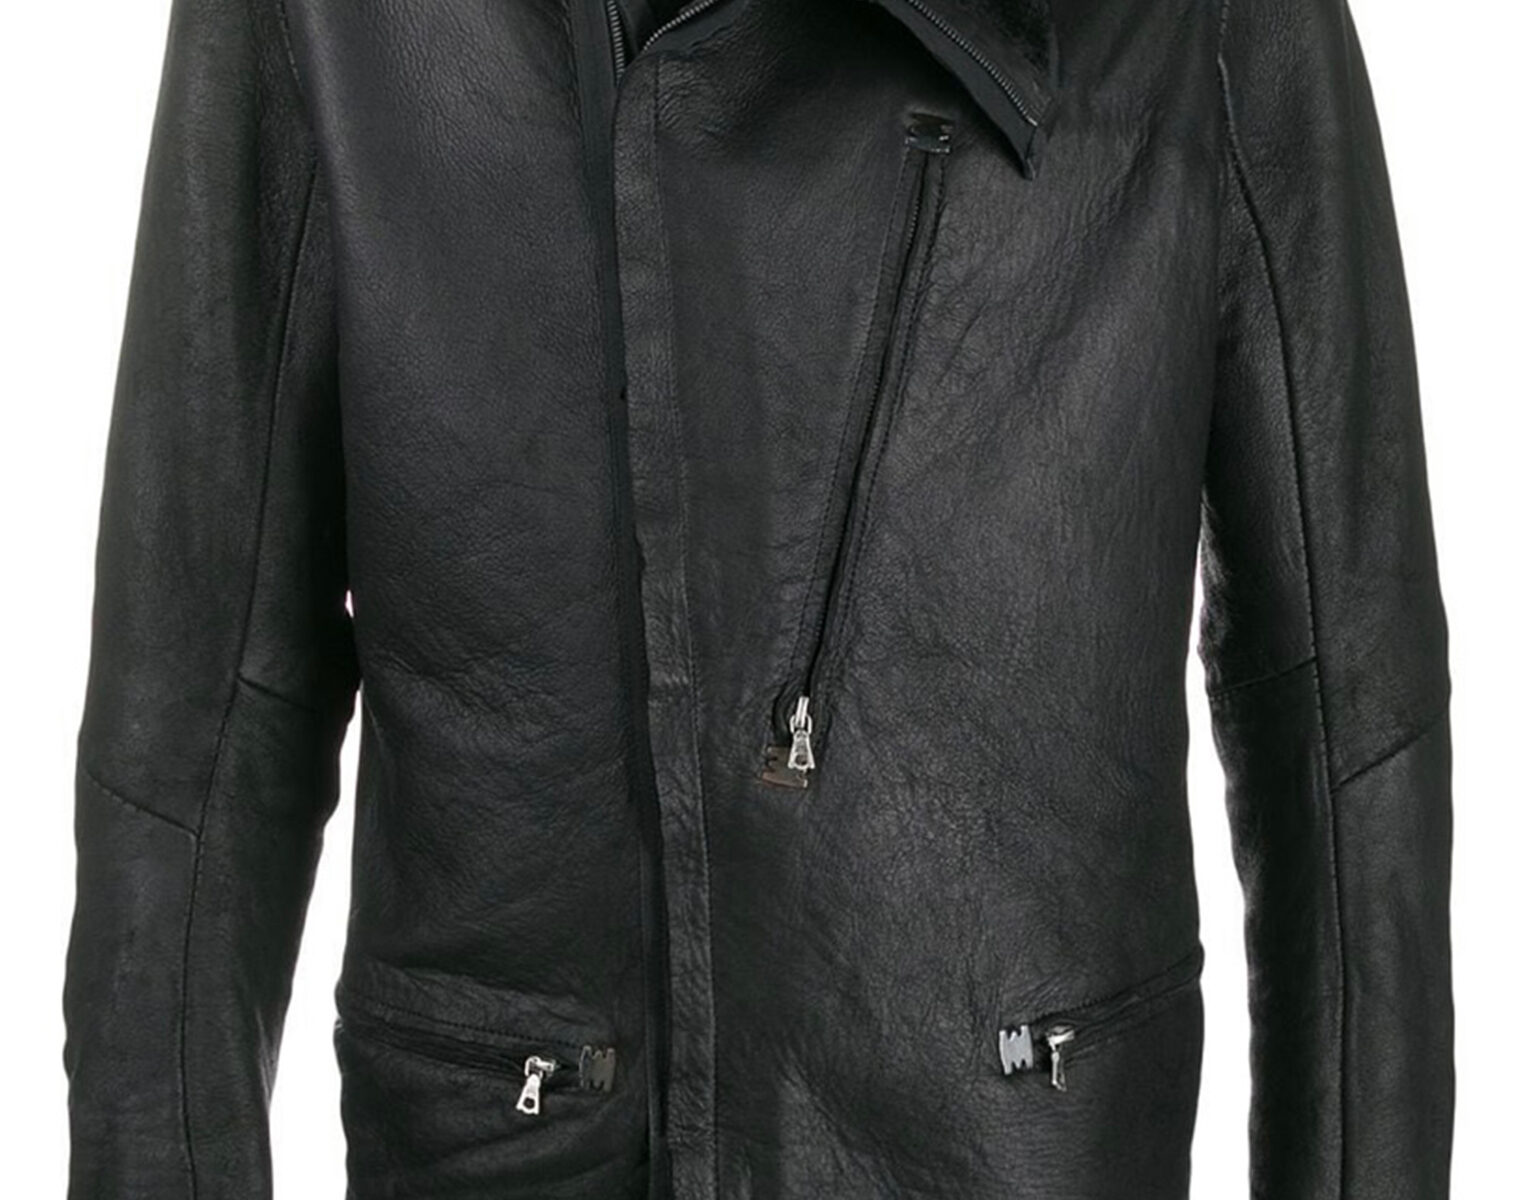 ISAAC SELLAM Shearling Leather Jacket 1